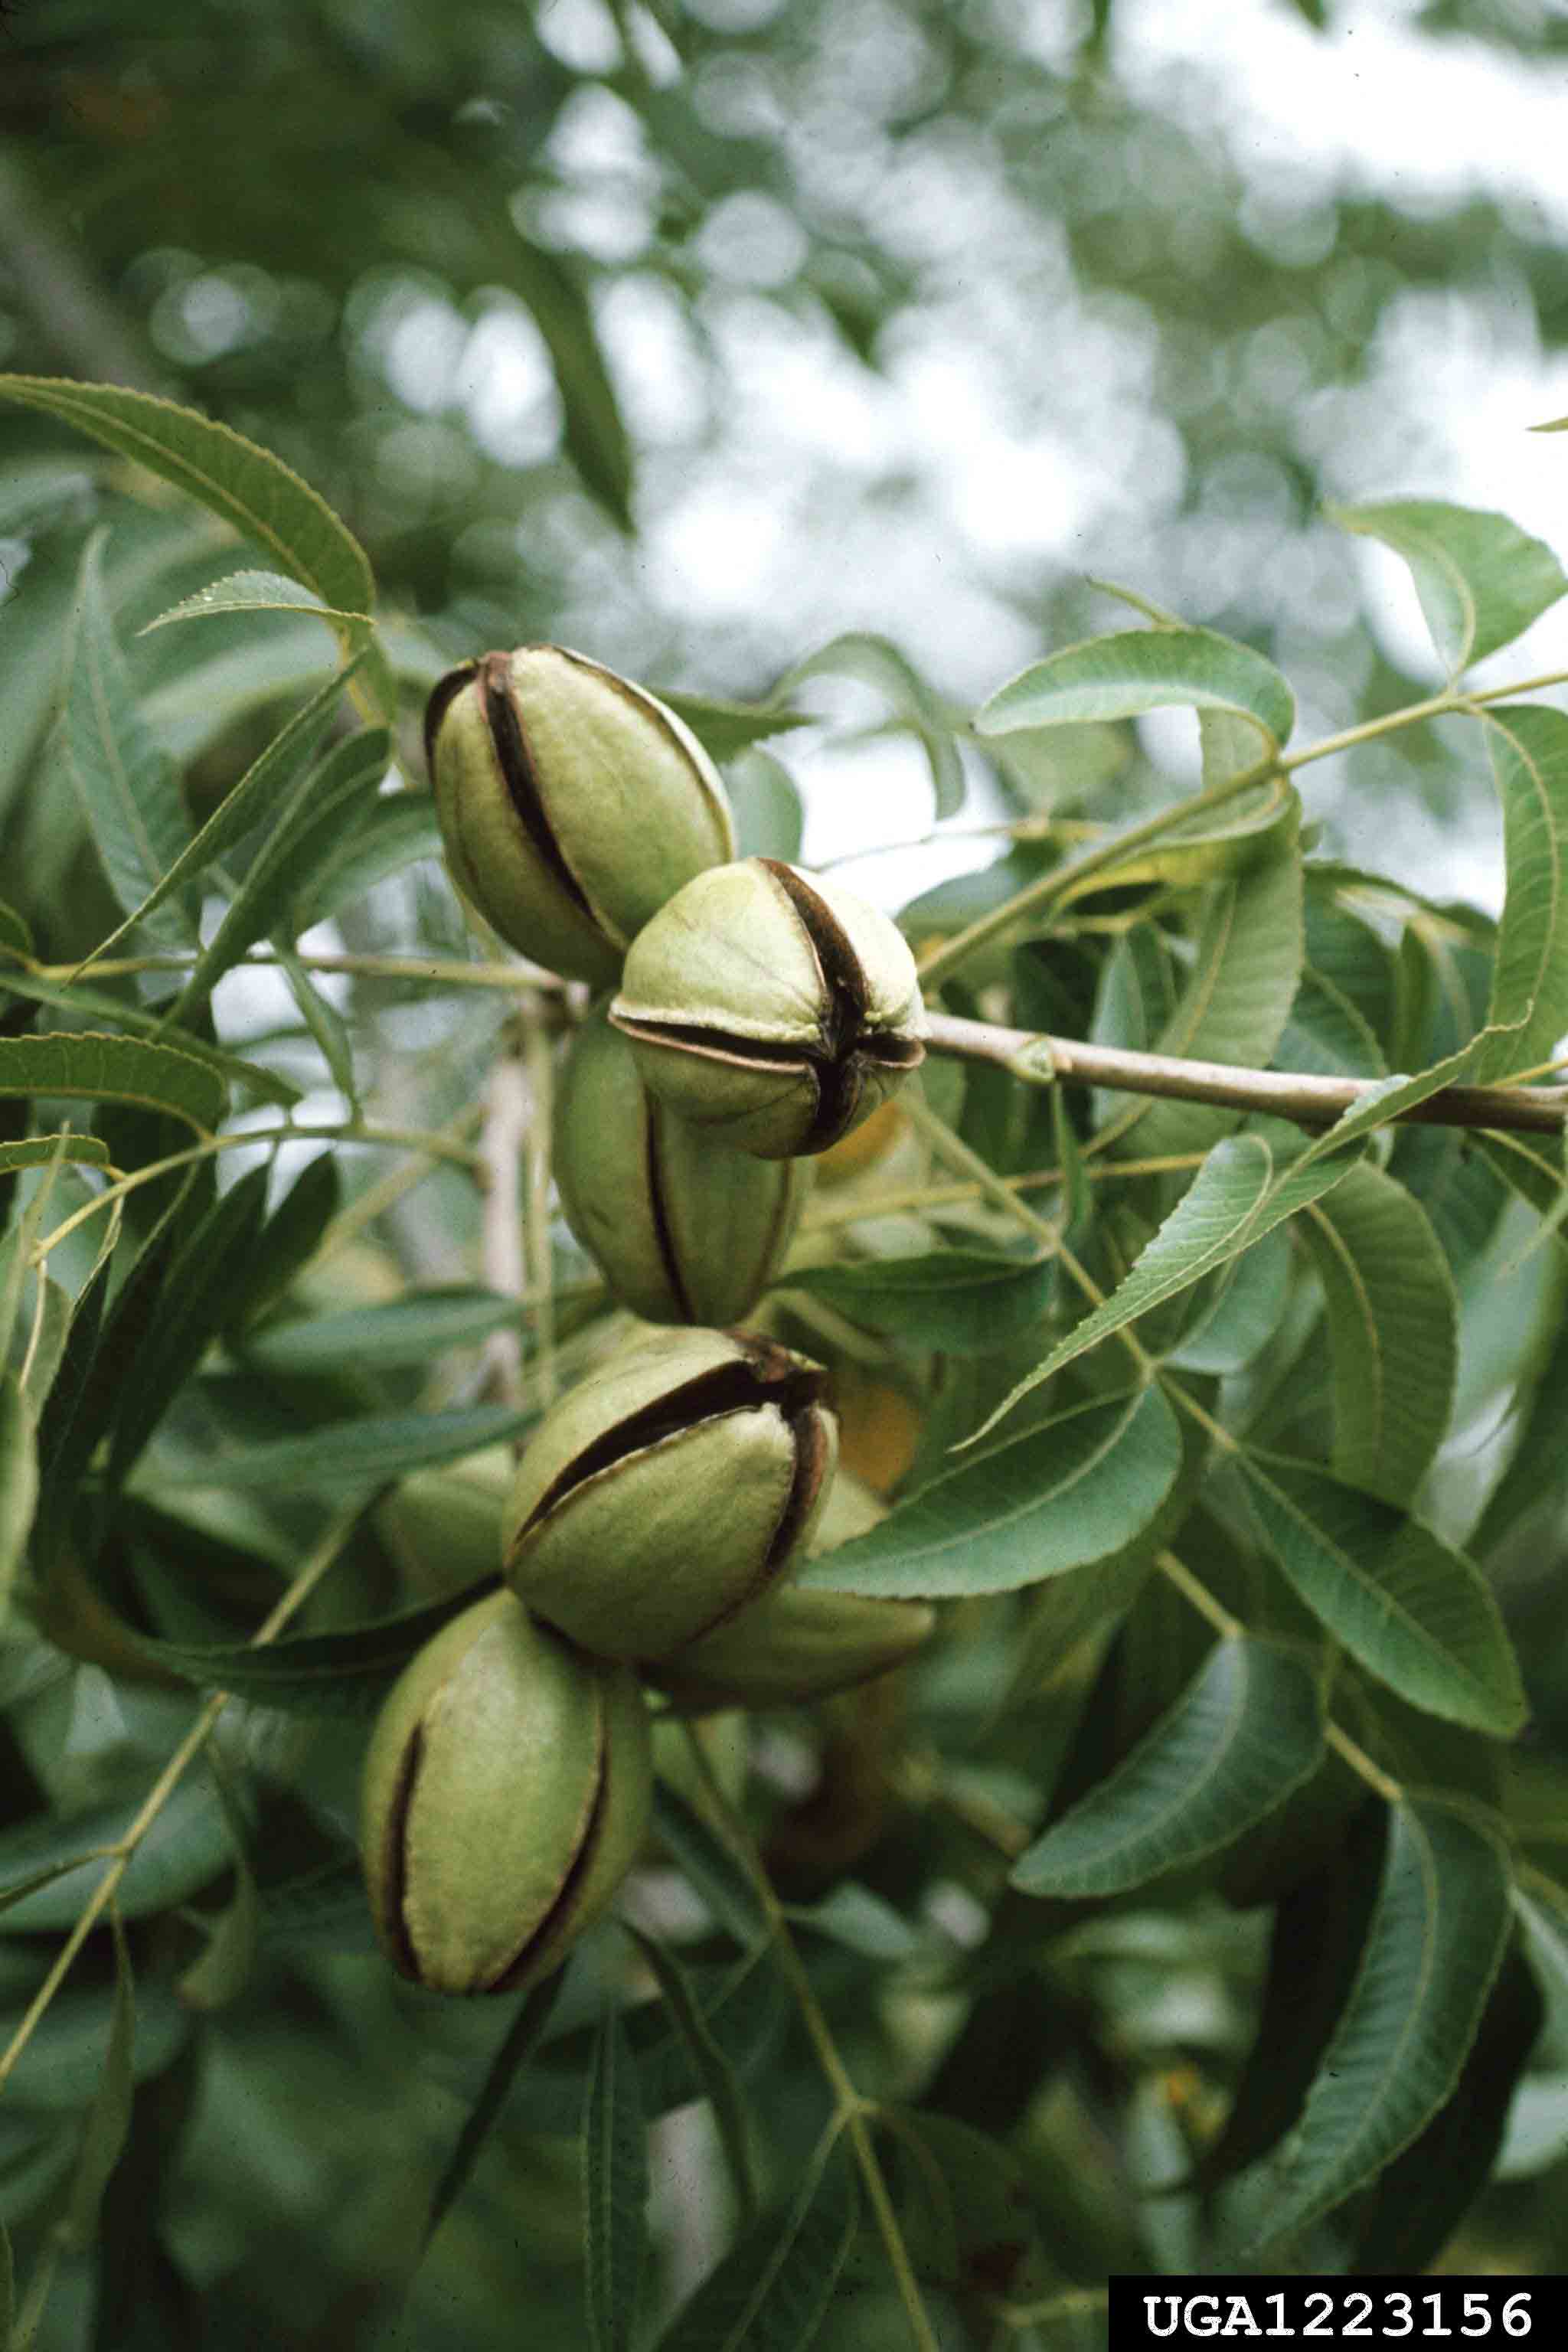 Pecan nuts in husks